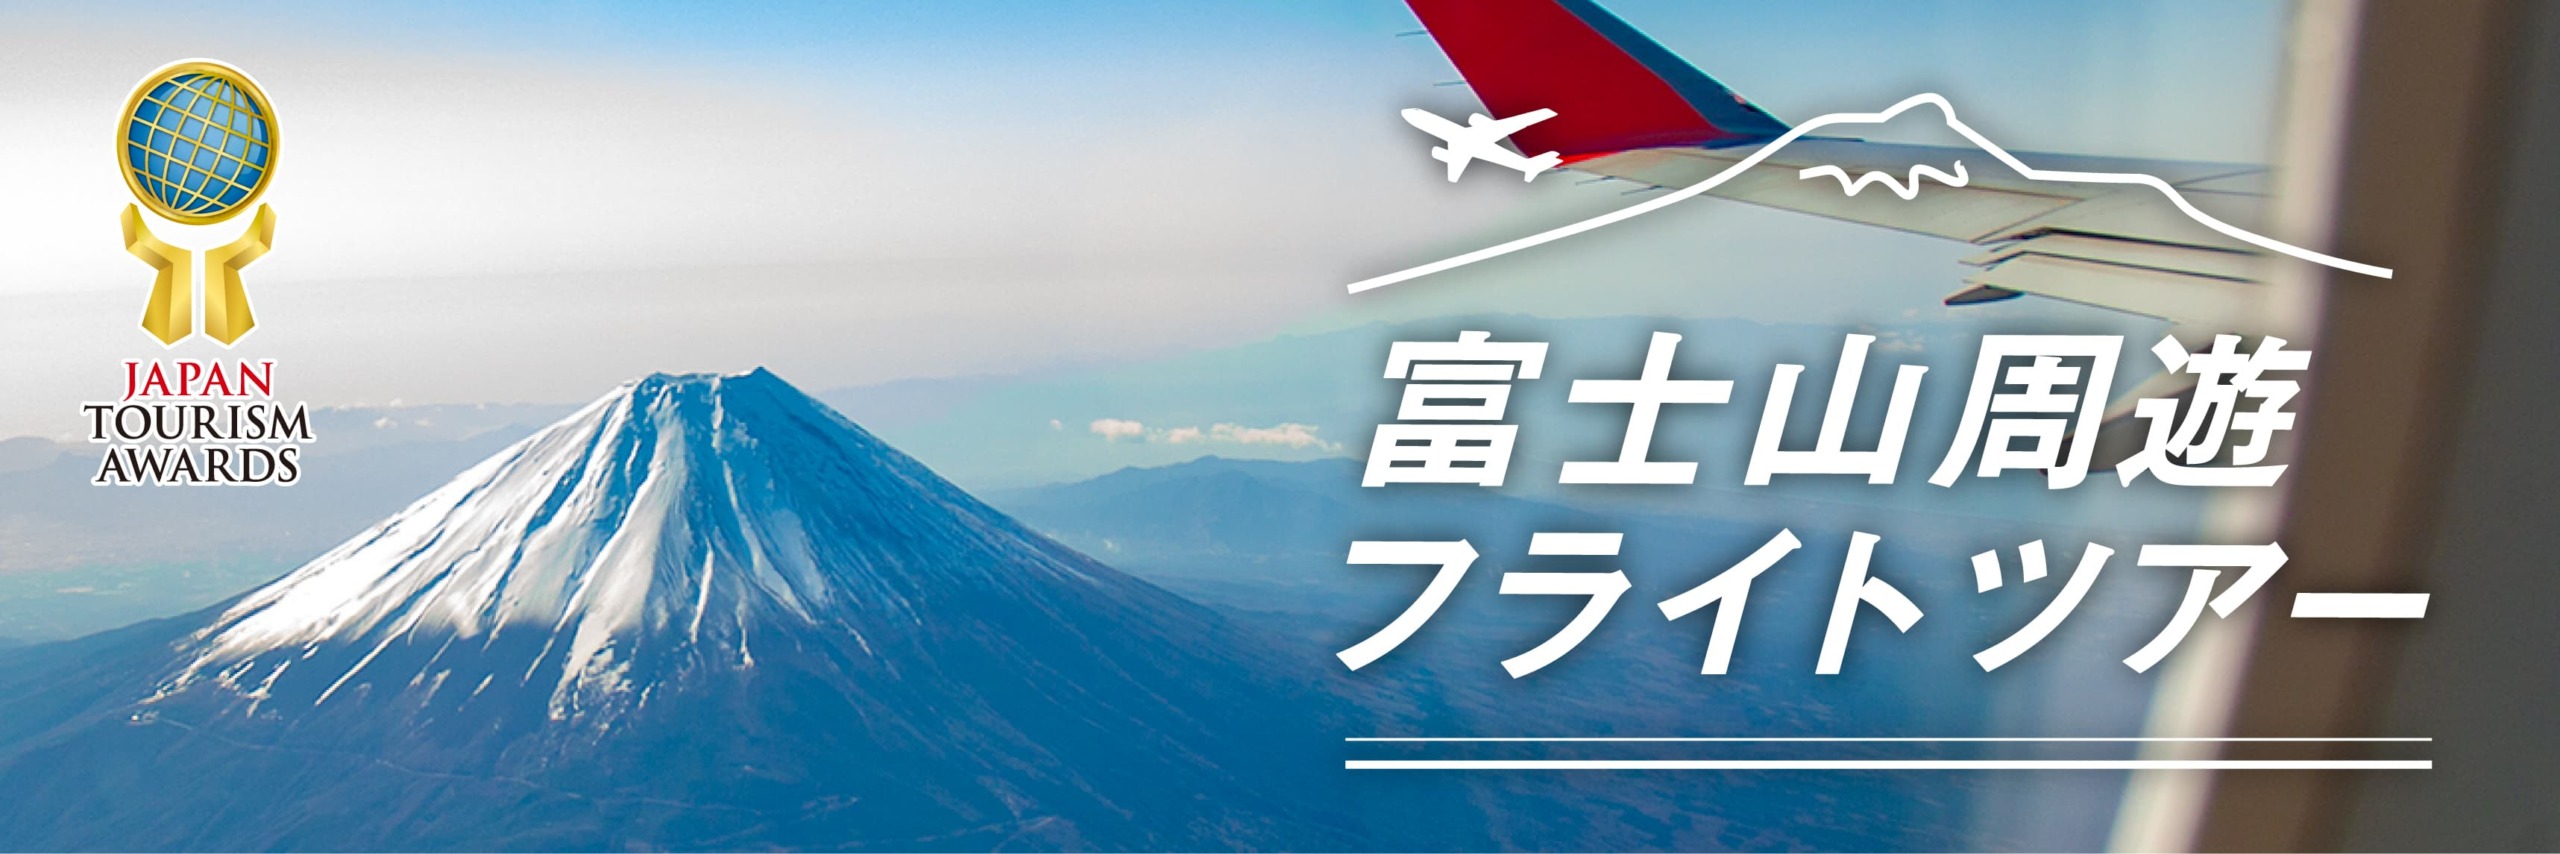 富士山周遊フライトツアー